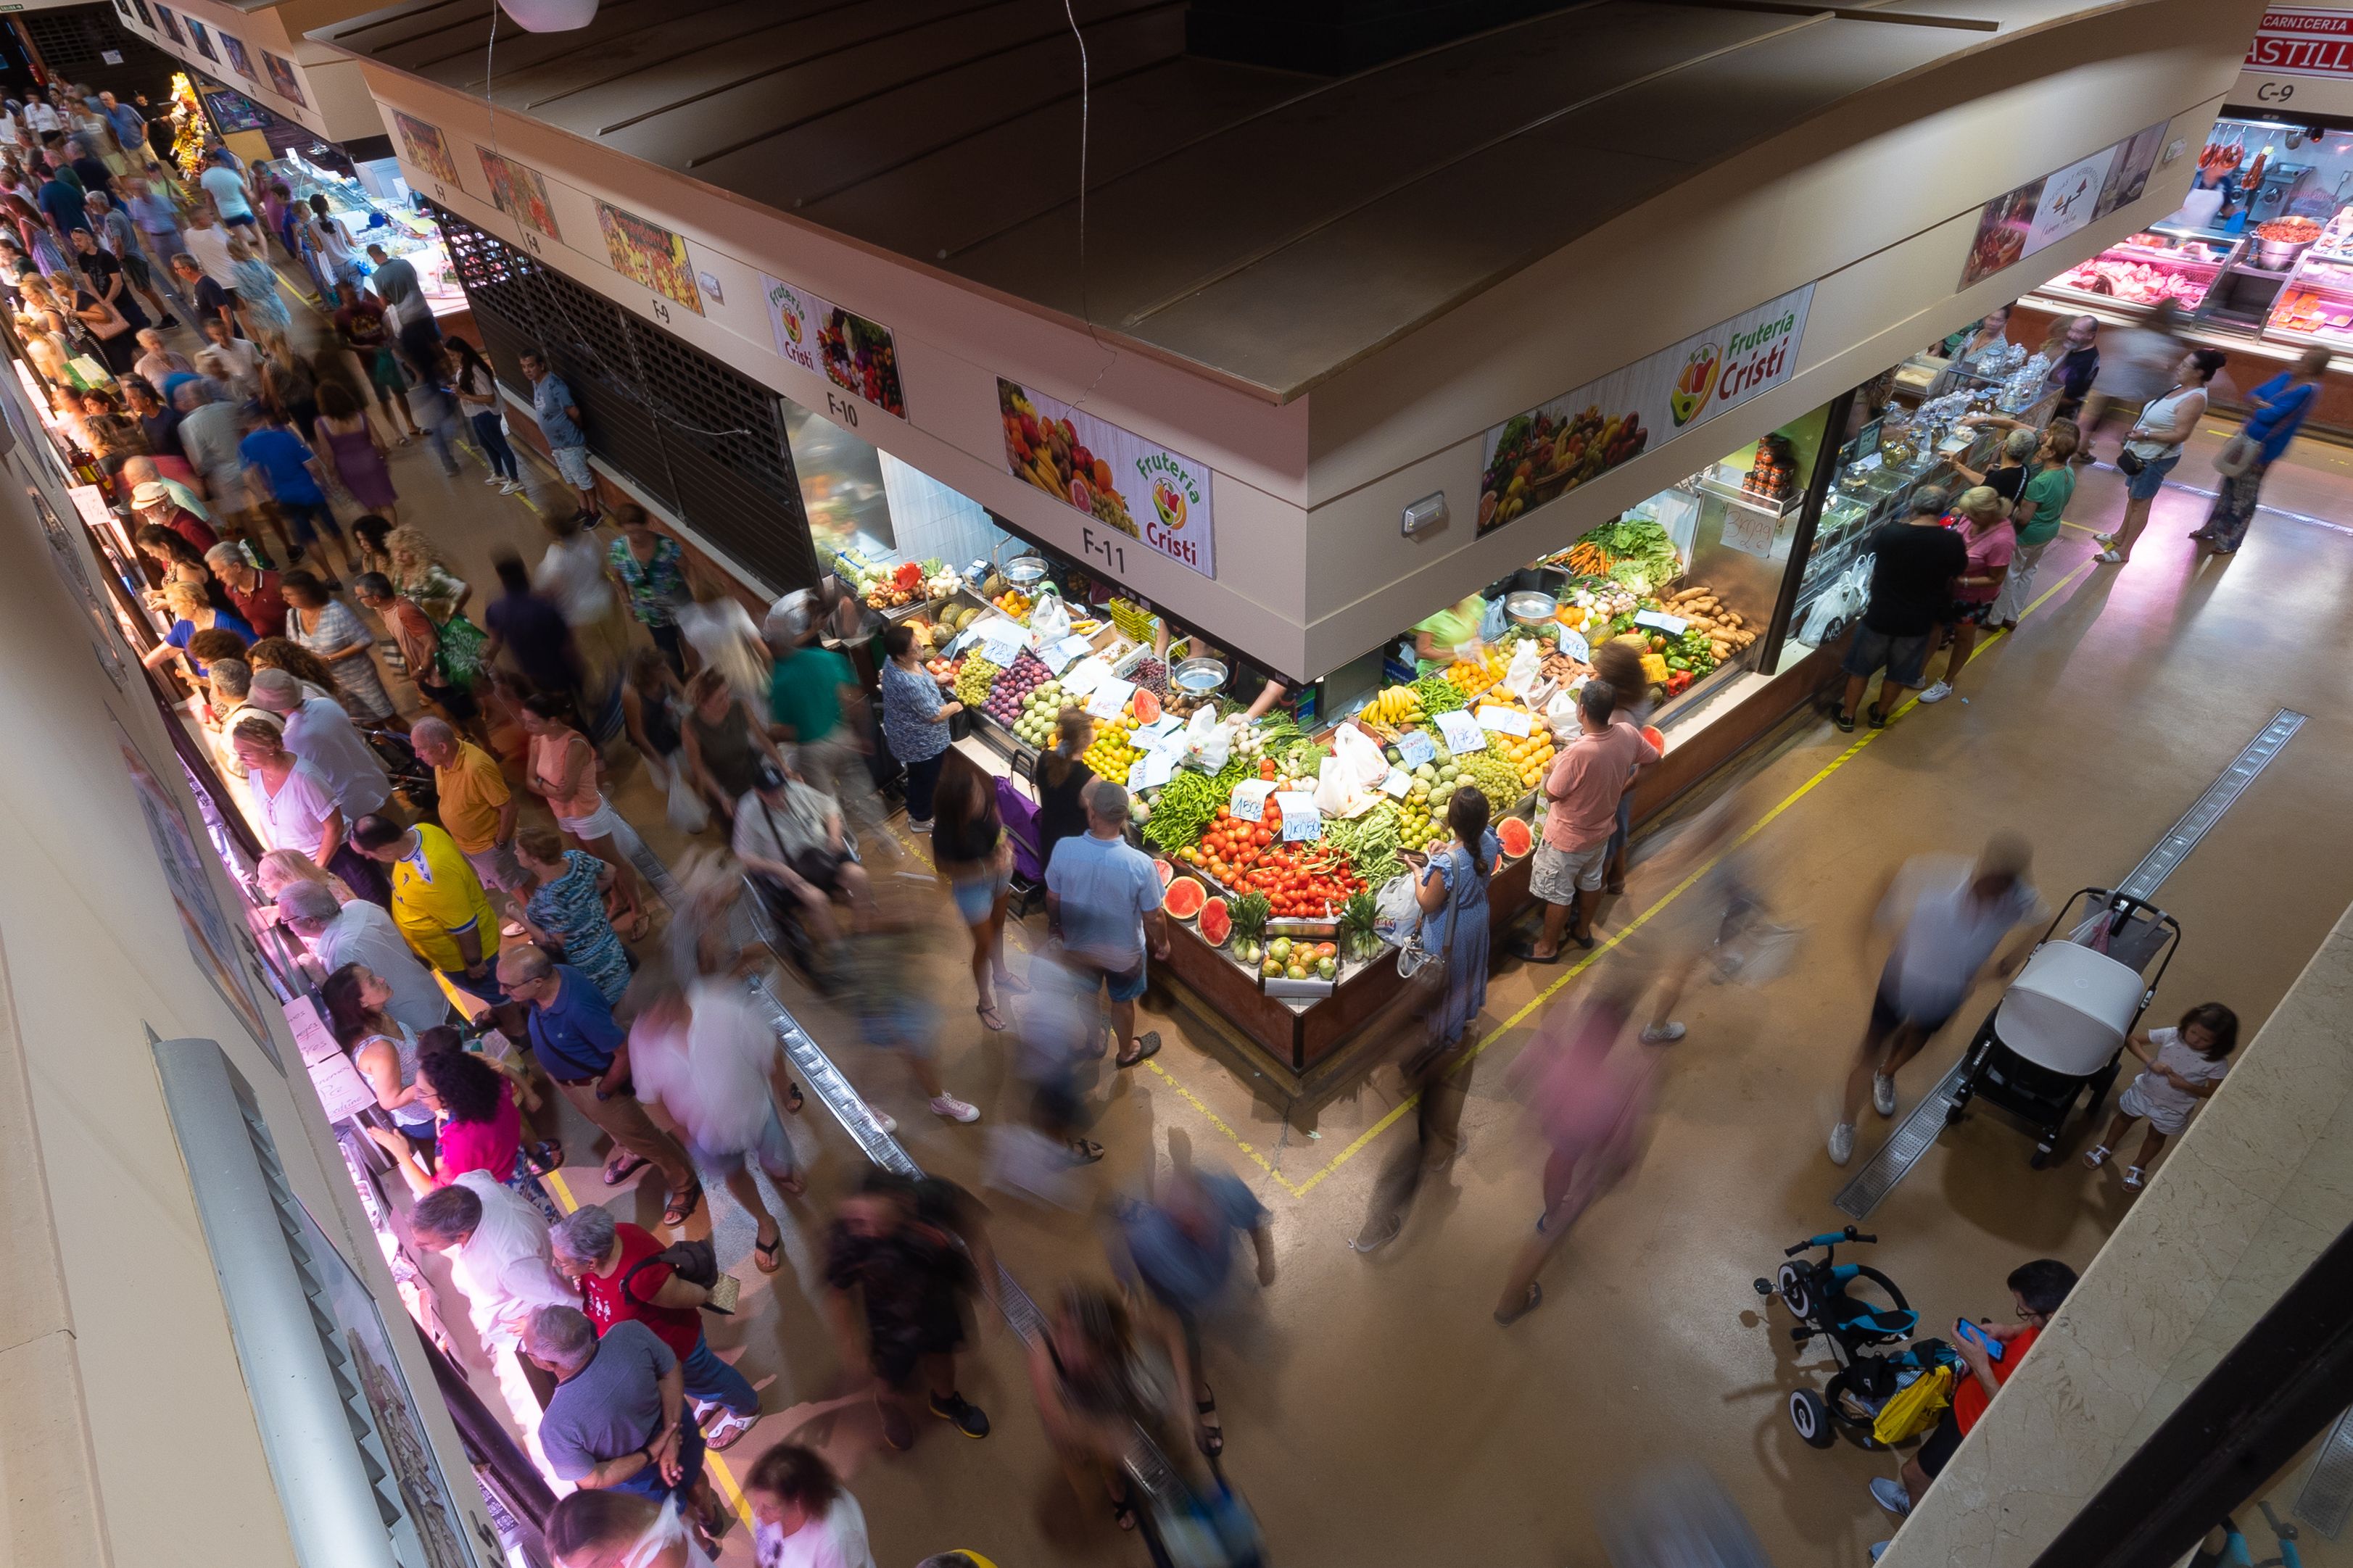 Mercado central de abastos de Chiclana, en una imagen reciente, uno de los más ambientados y ricos de la provincia de Cádiz, prueba de la pujanza de este municipio.